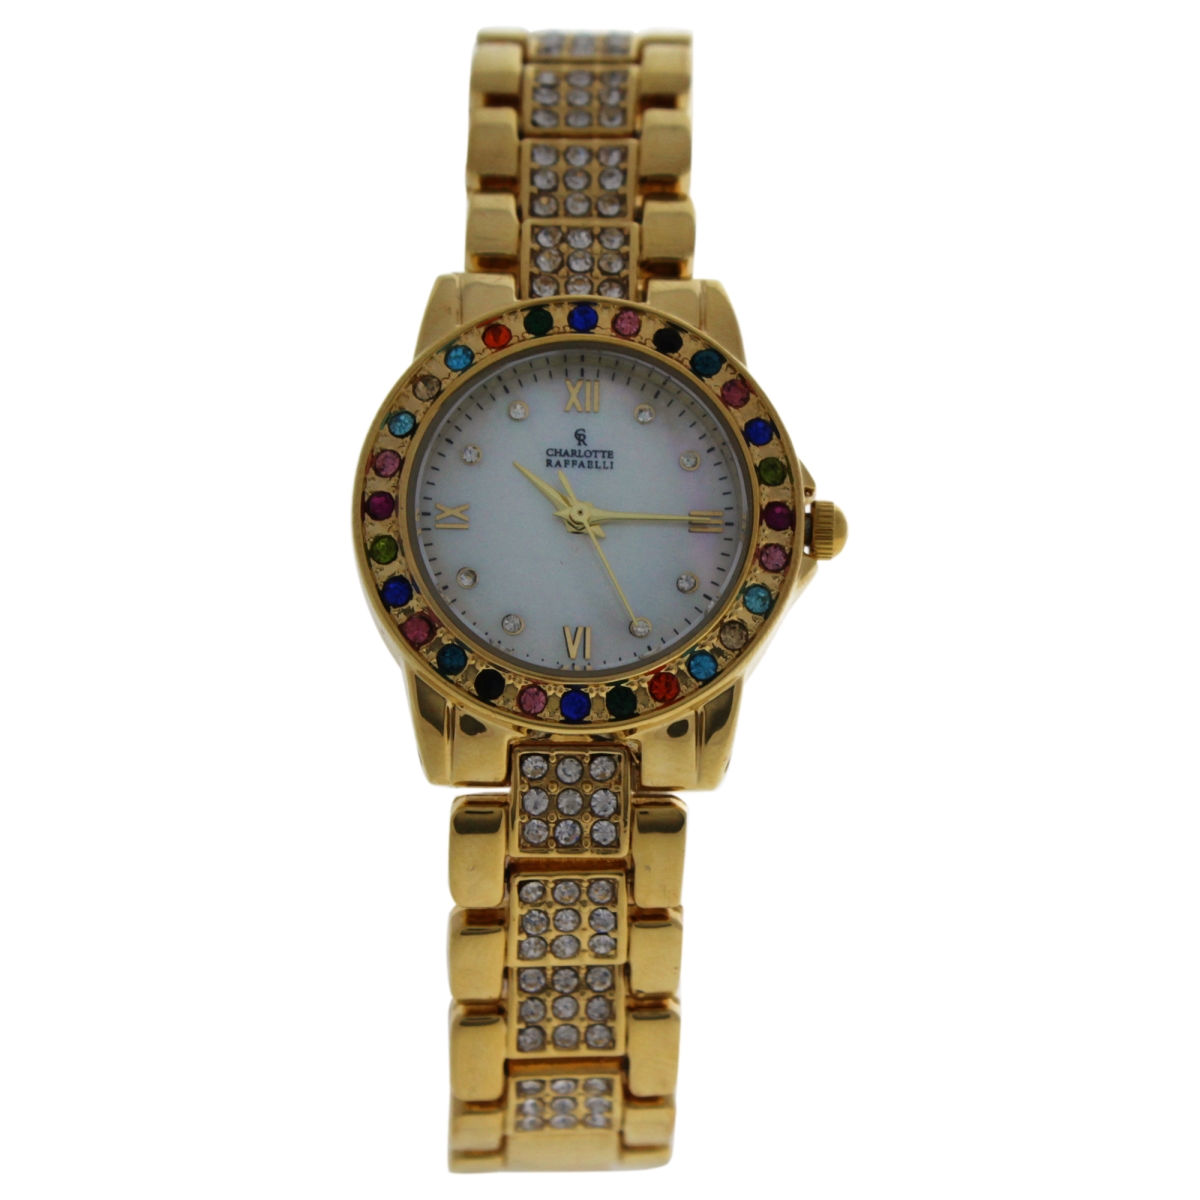 W-wat-1443 Gold & Multicolor Stainless Steel Bracelet Watch For Women - Crm001